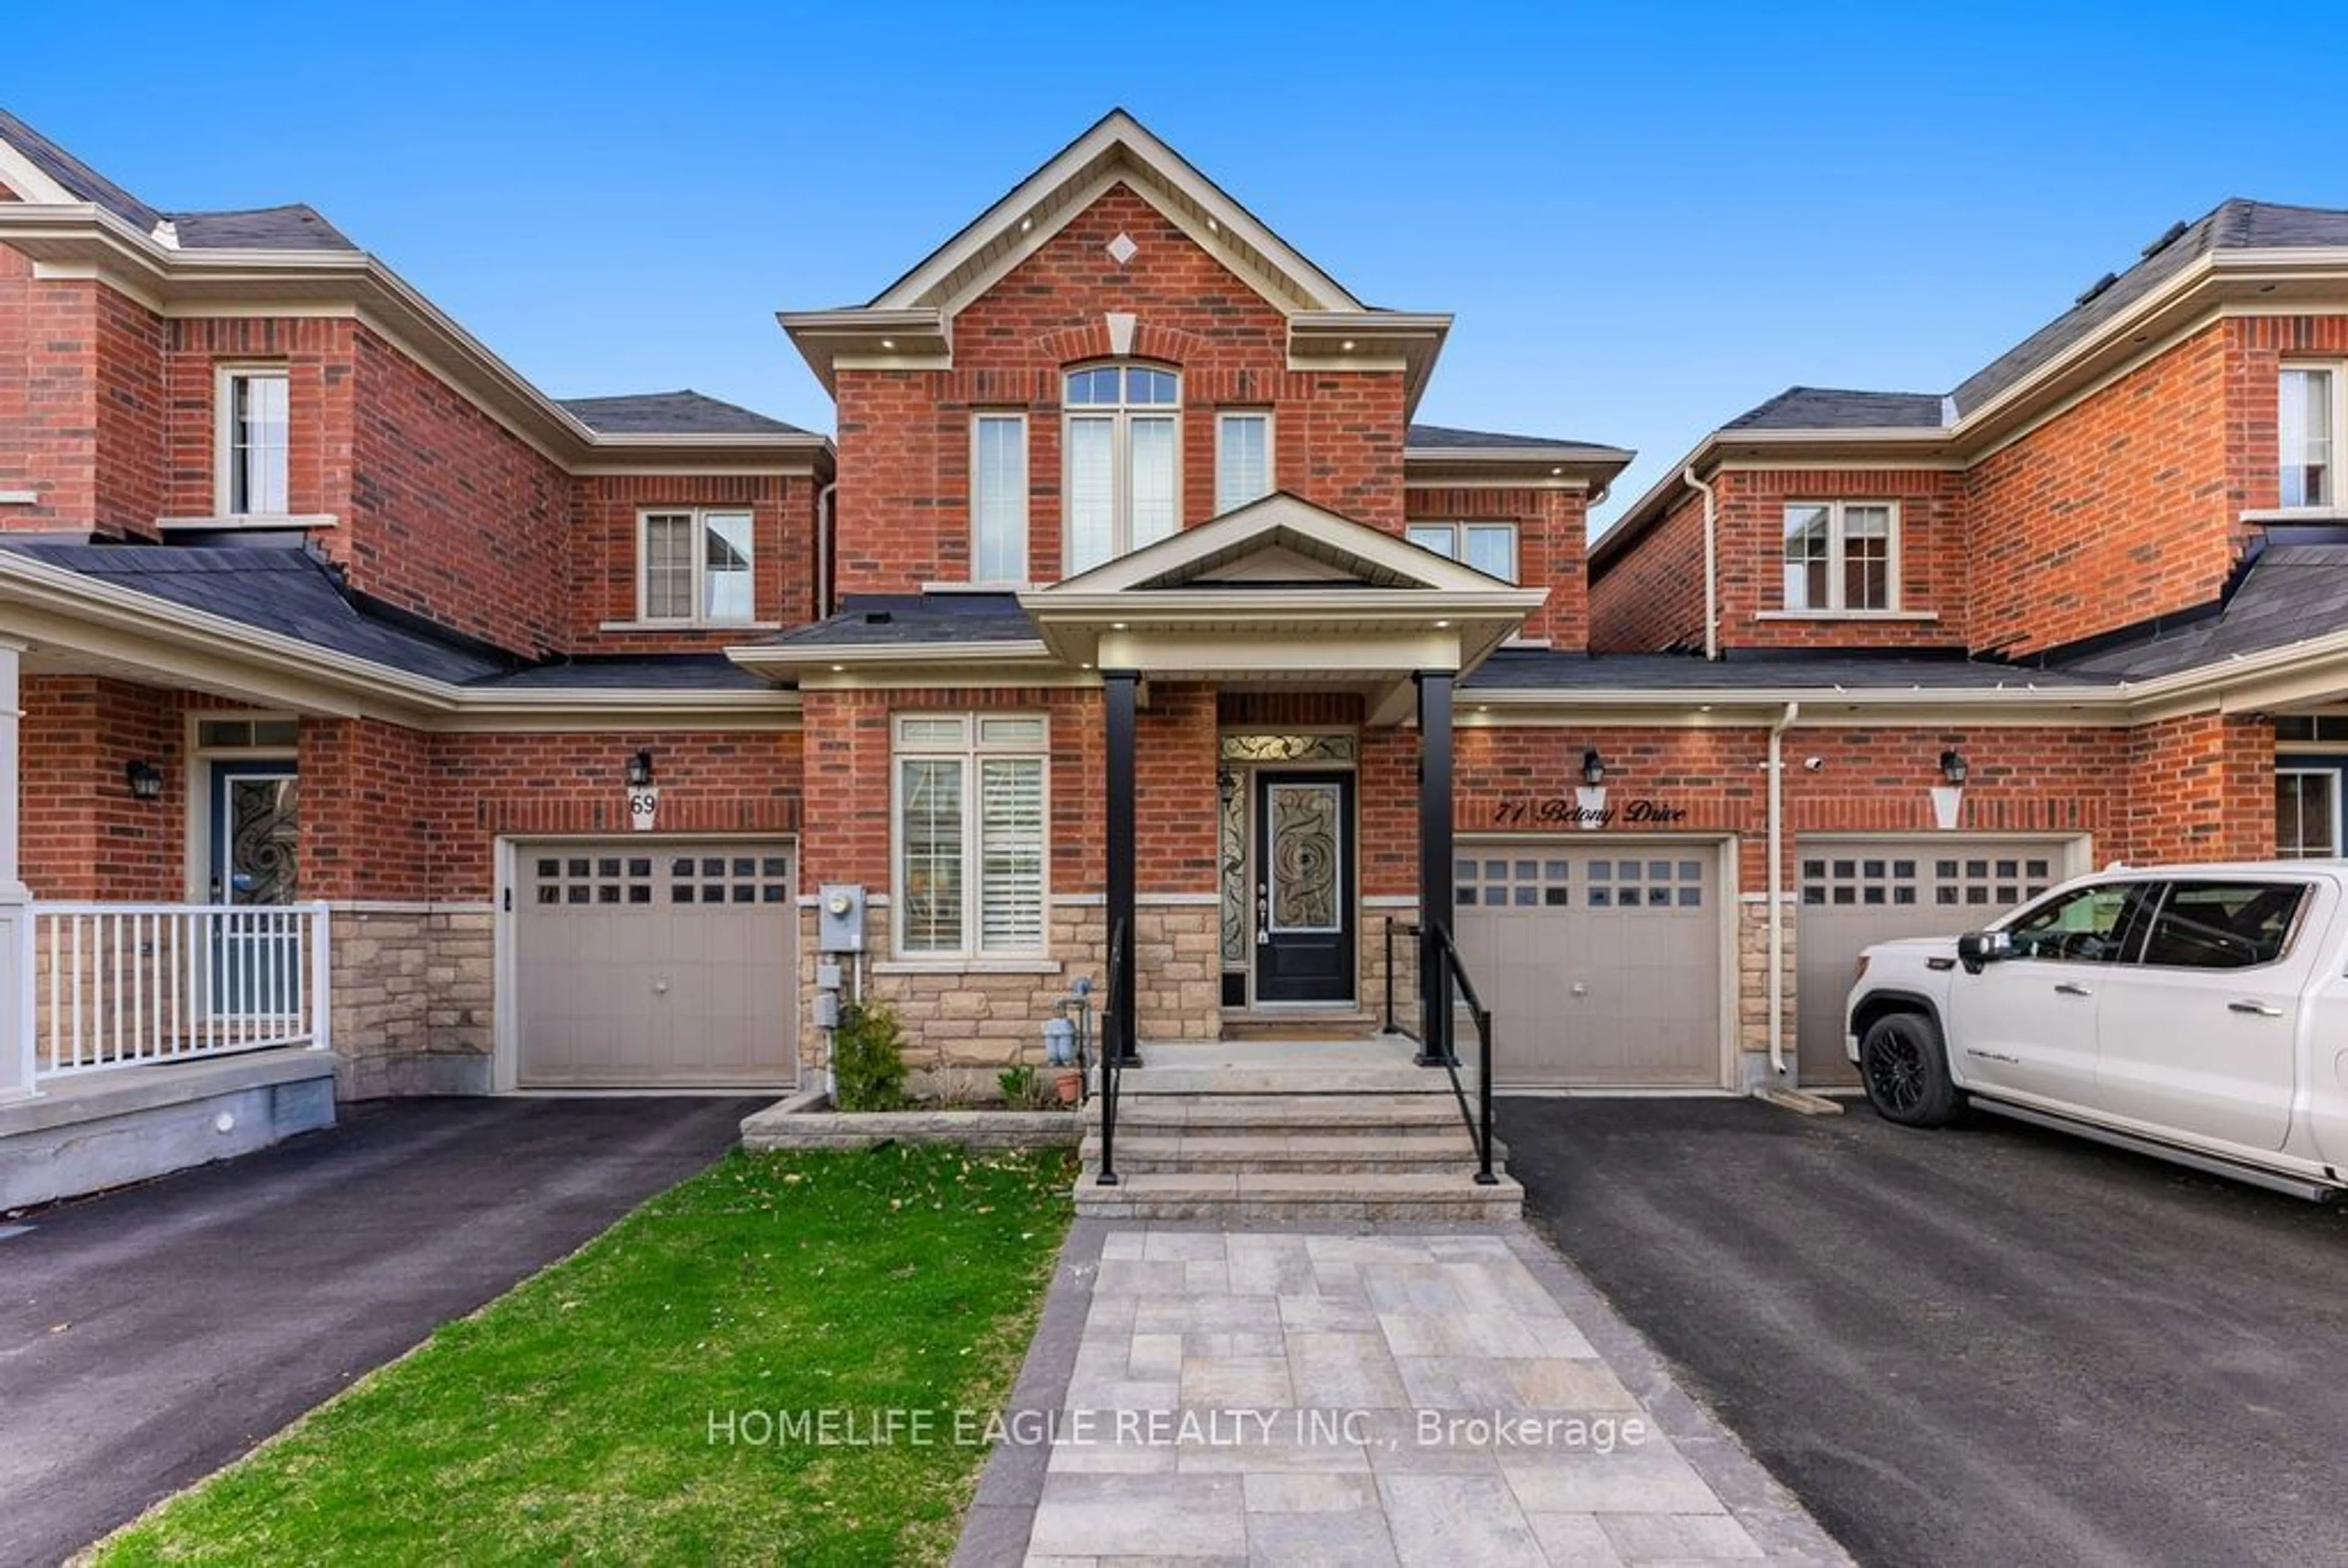 Home with brick exterior material for 71 Betony Dr, Richmond Hill Ontario L4E 0V6